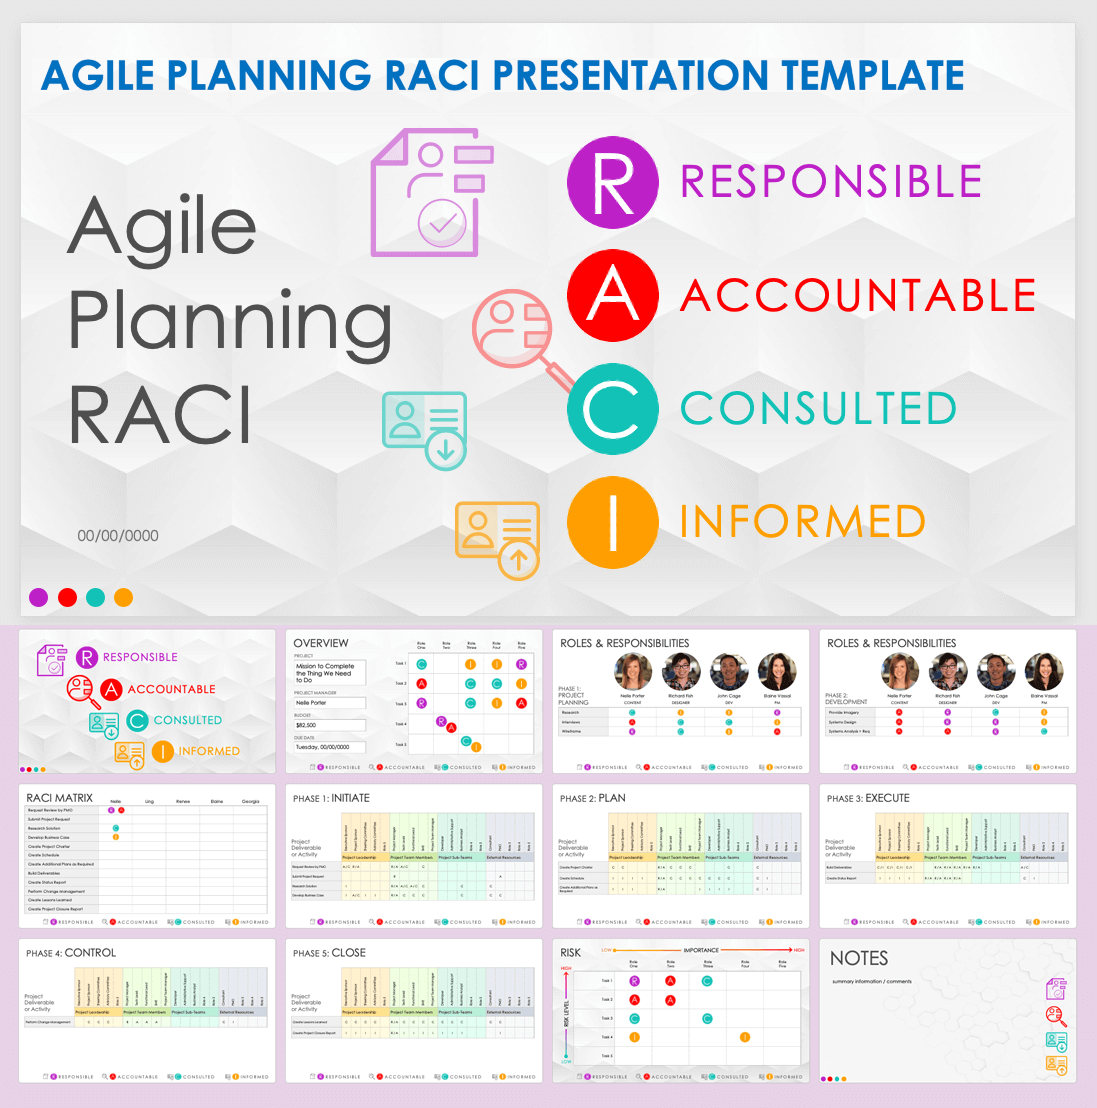 Agile Planning RACI Presentation Template